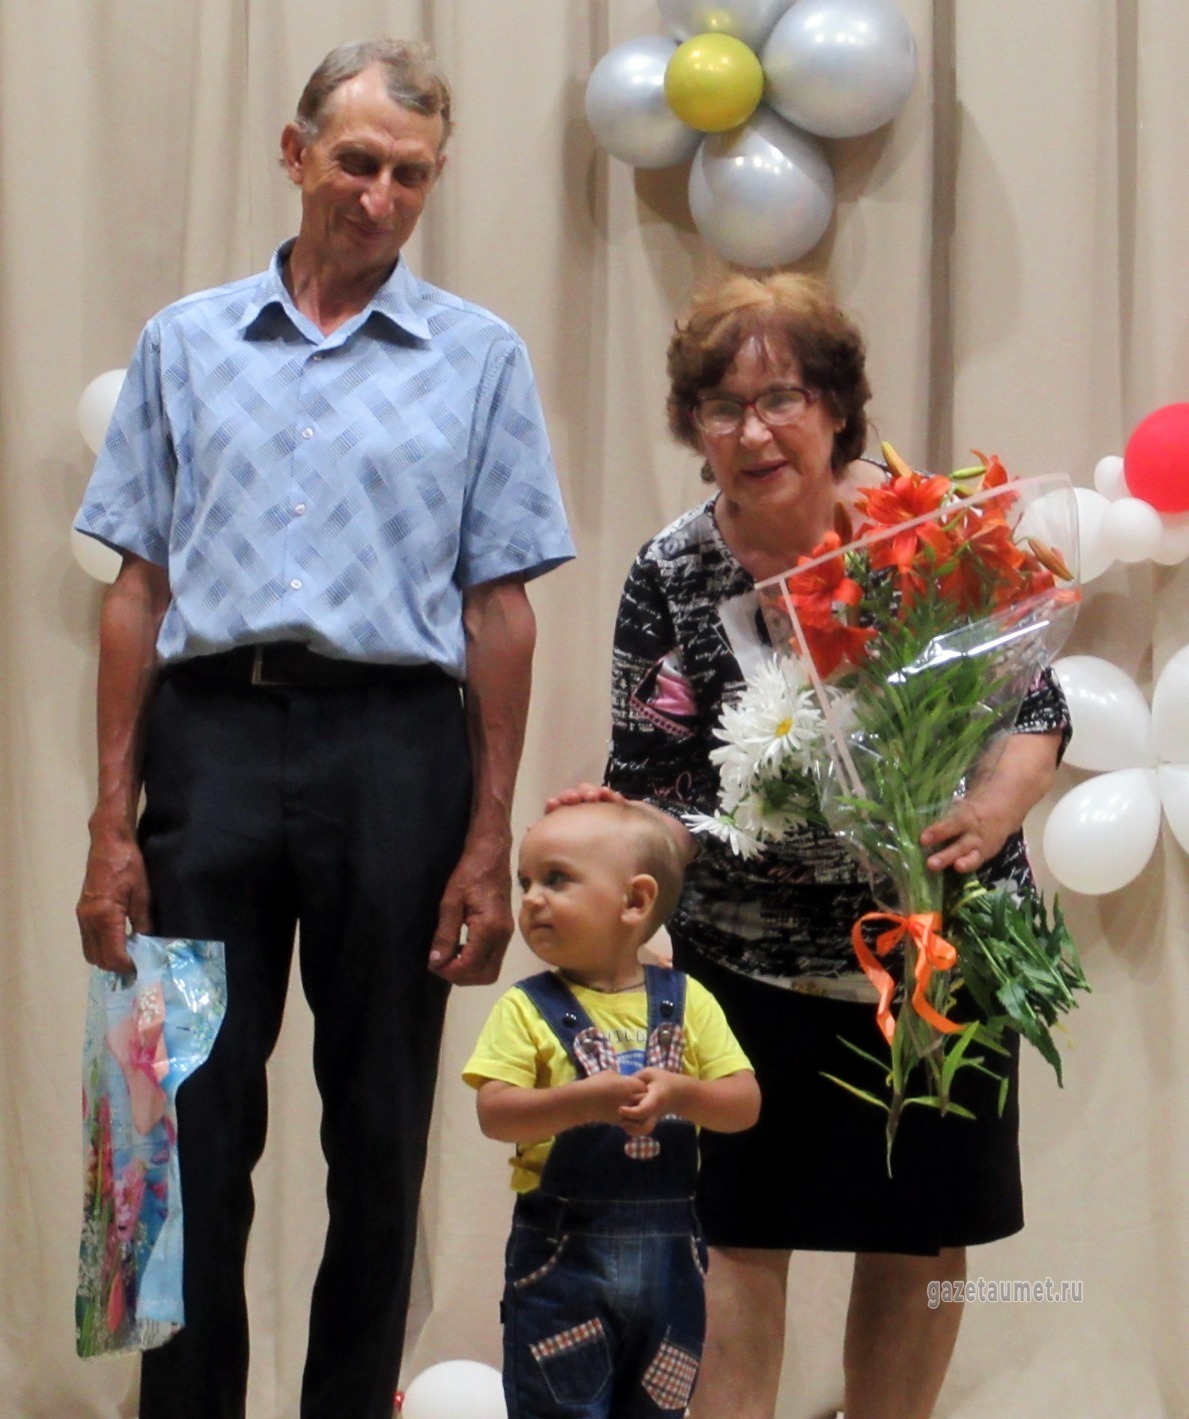 Супруги Сатанины в сентябре отметят 40-летие семьи. Поздравить их пришёл внук Олег